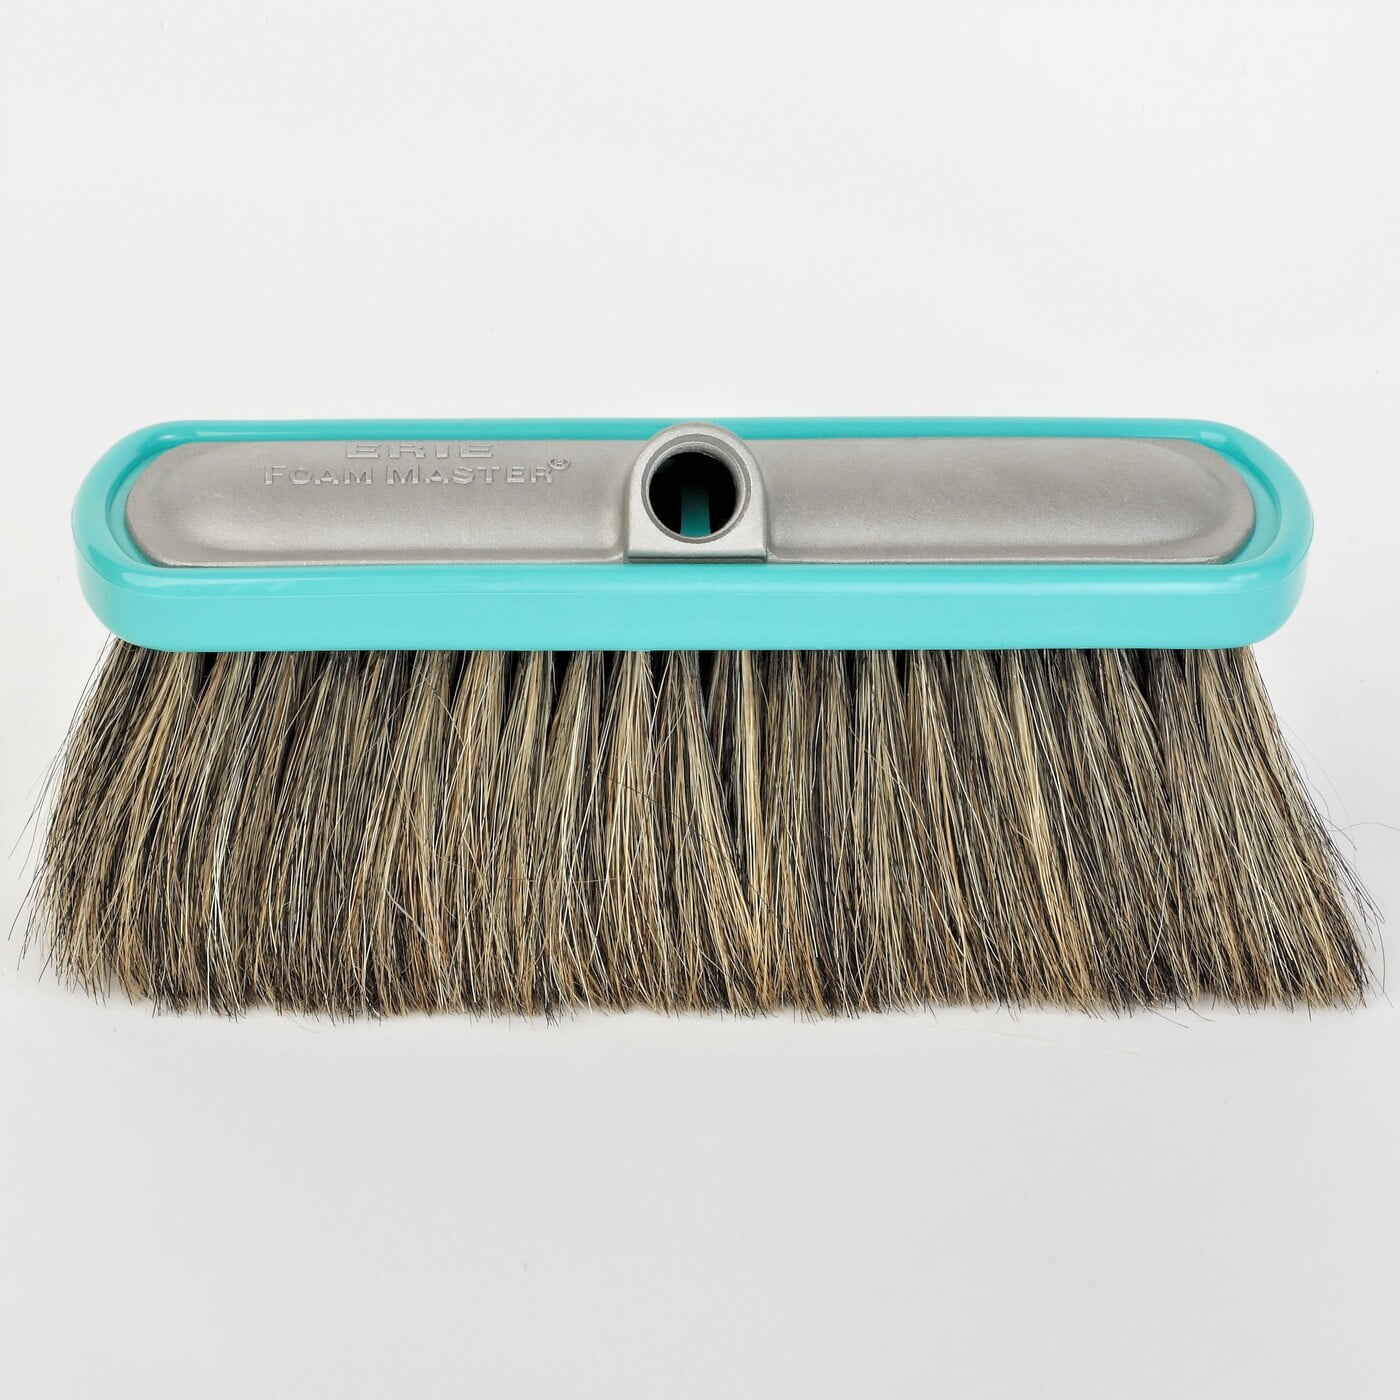 Brush Washer, H: 21 cm, Dia. 11 cm, 1 pc